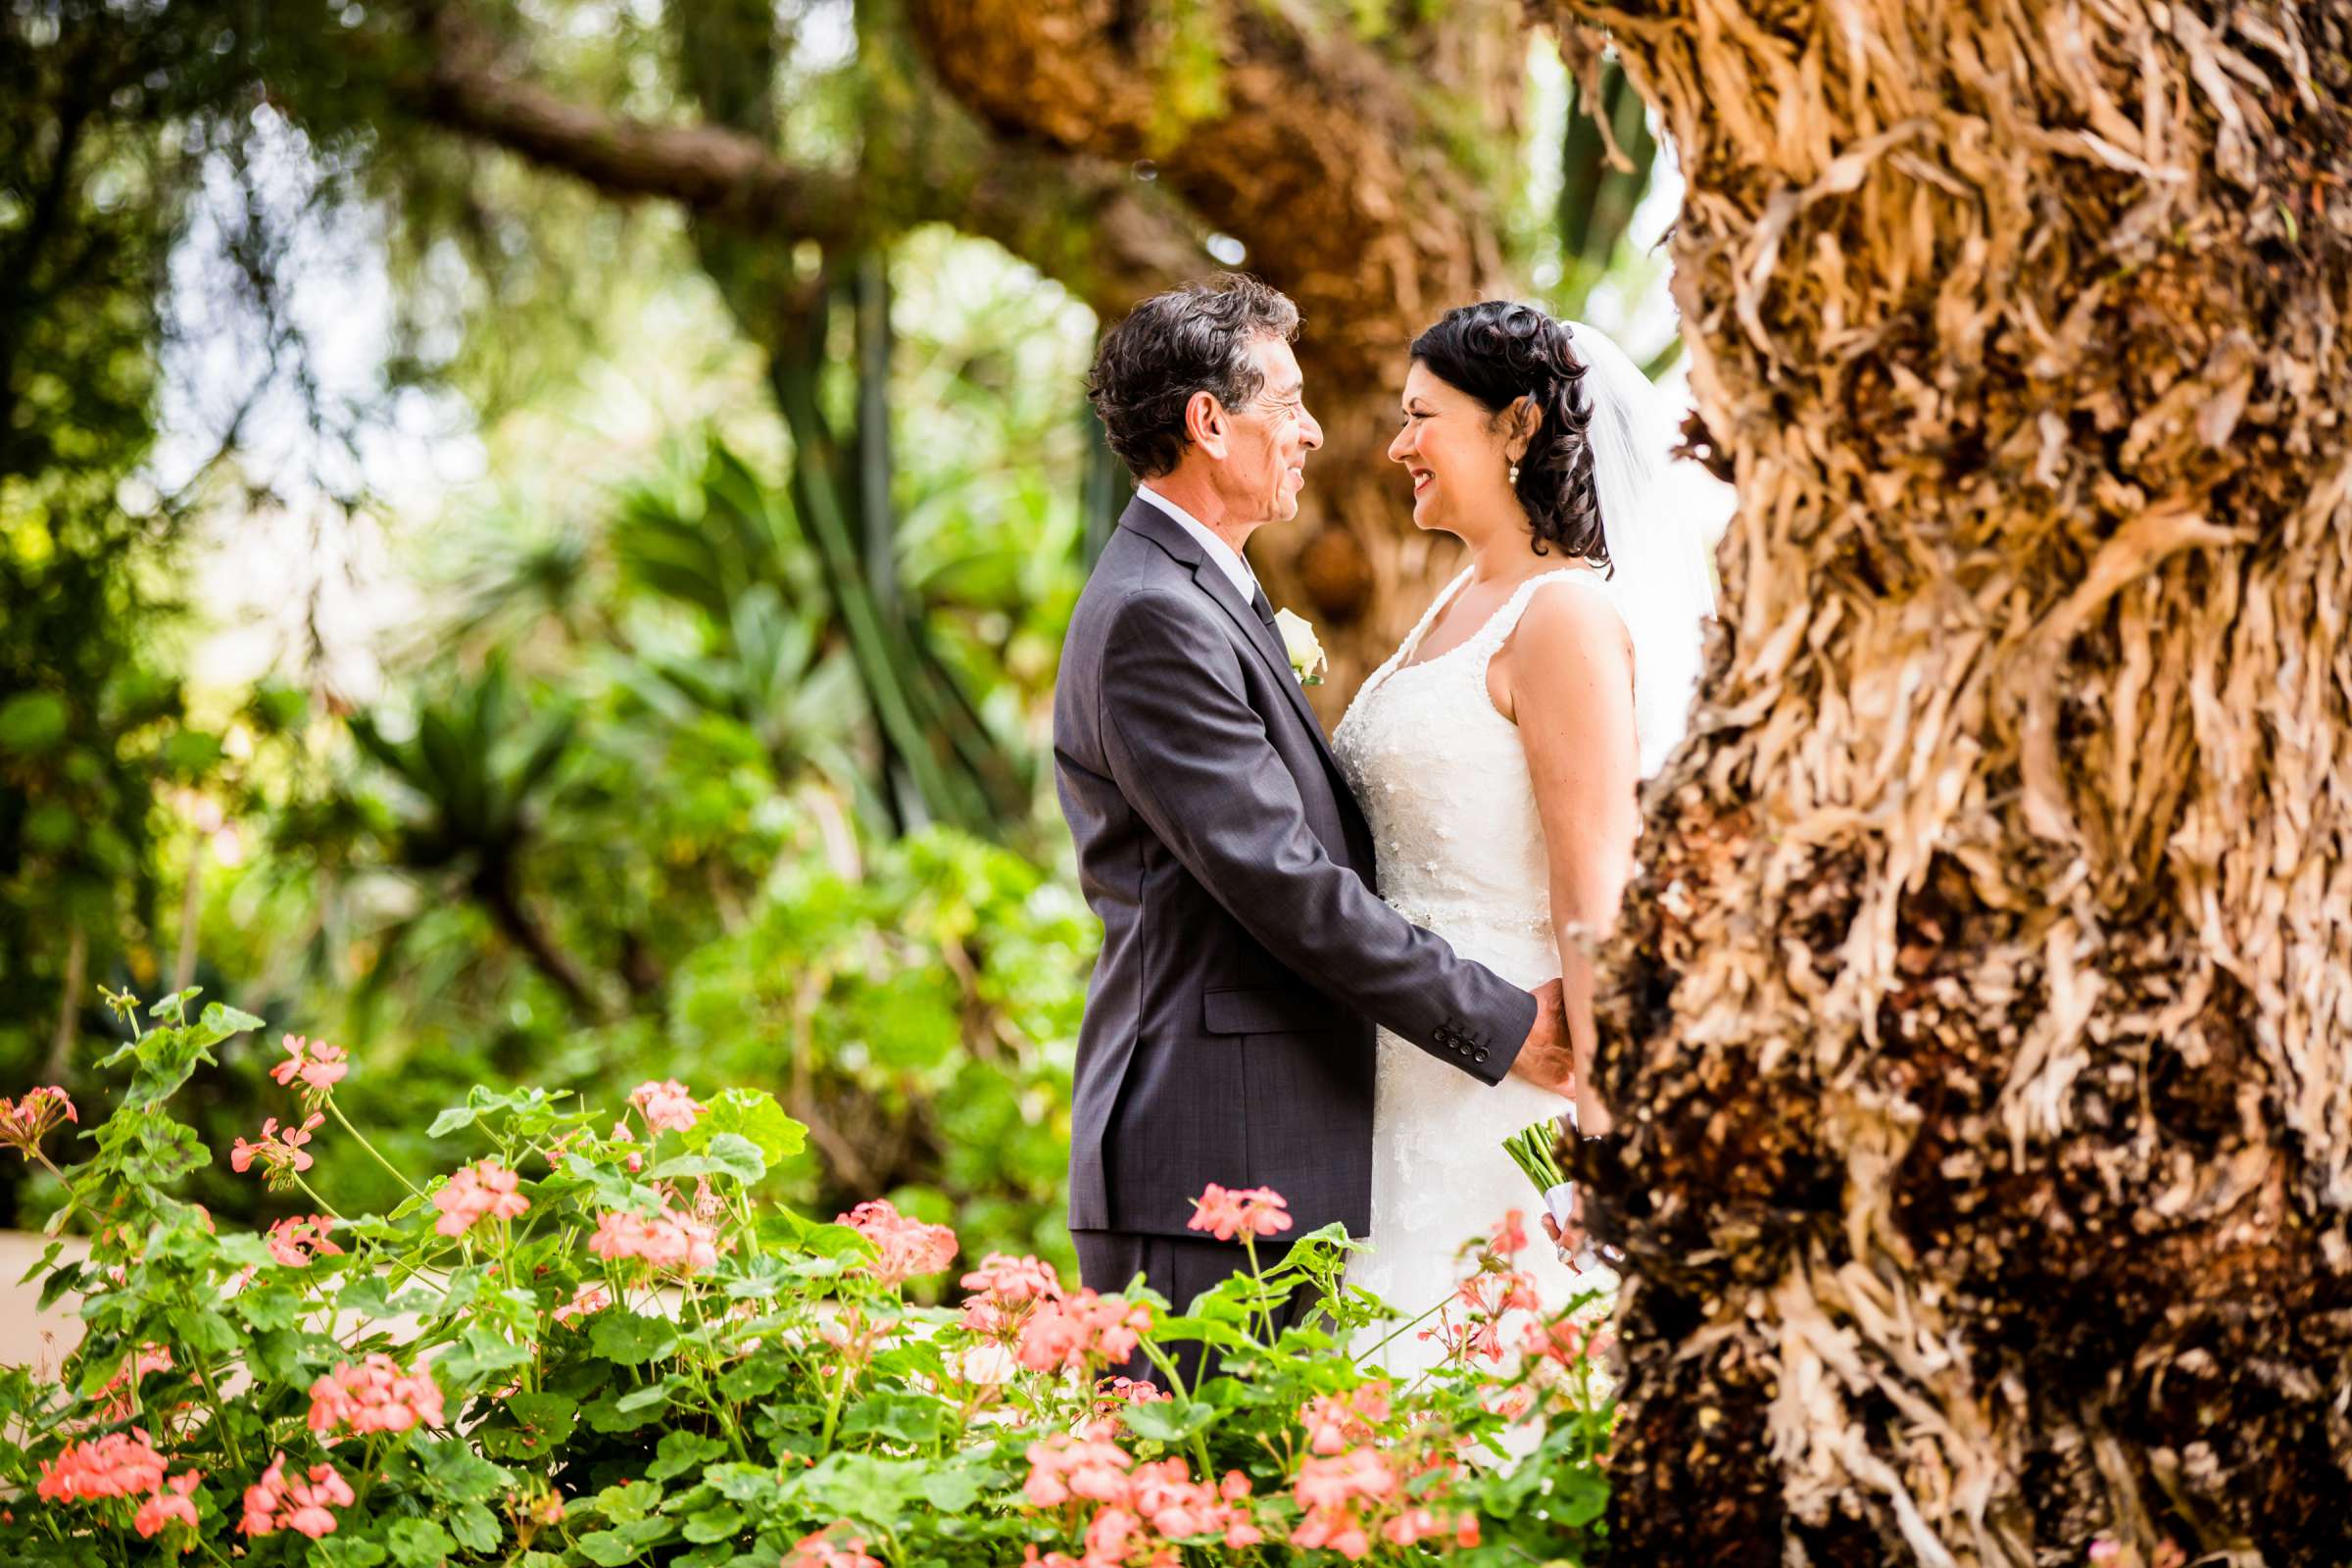 Rancho Buena Vista Adobe Wedding, Ellinor and Frank Wedding Photo #1 by True Photography